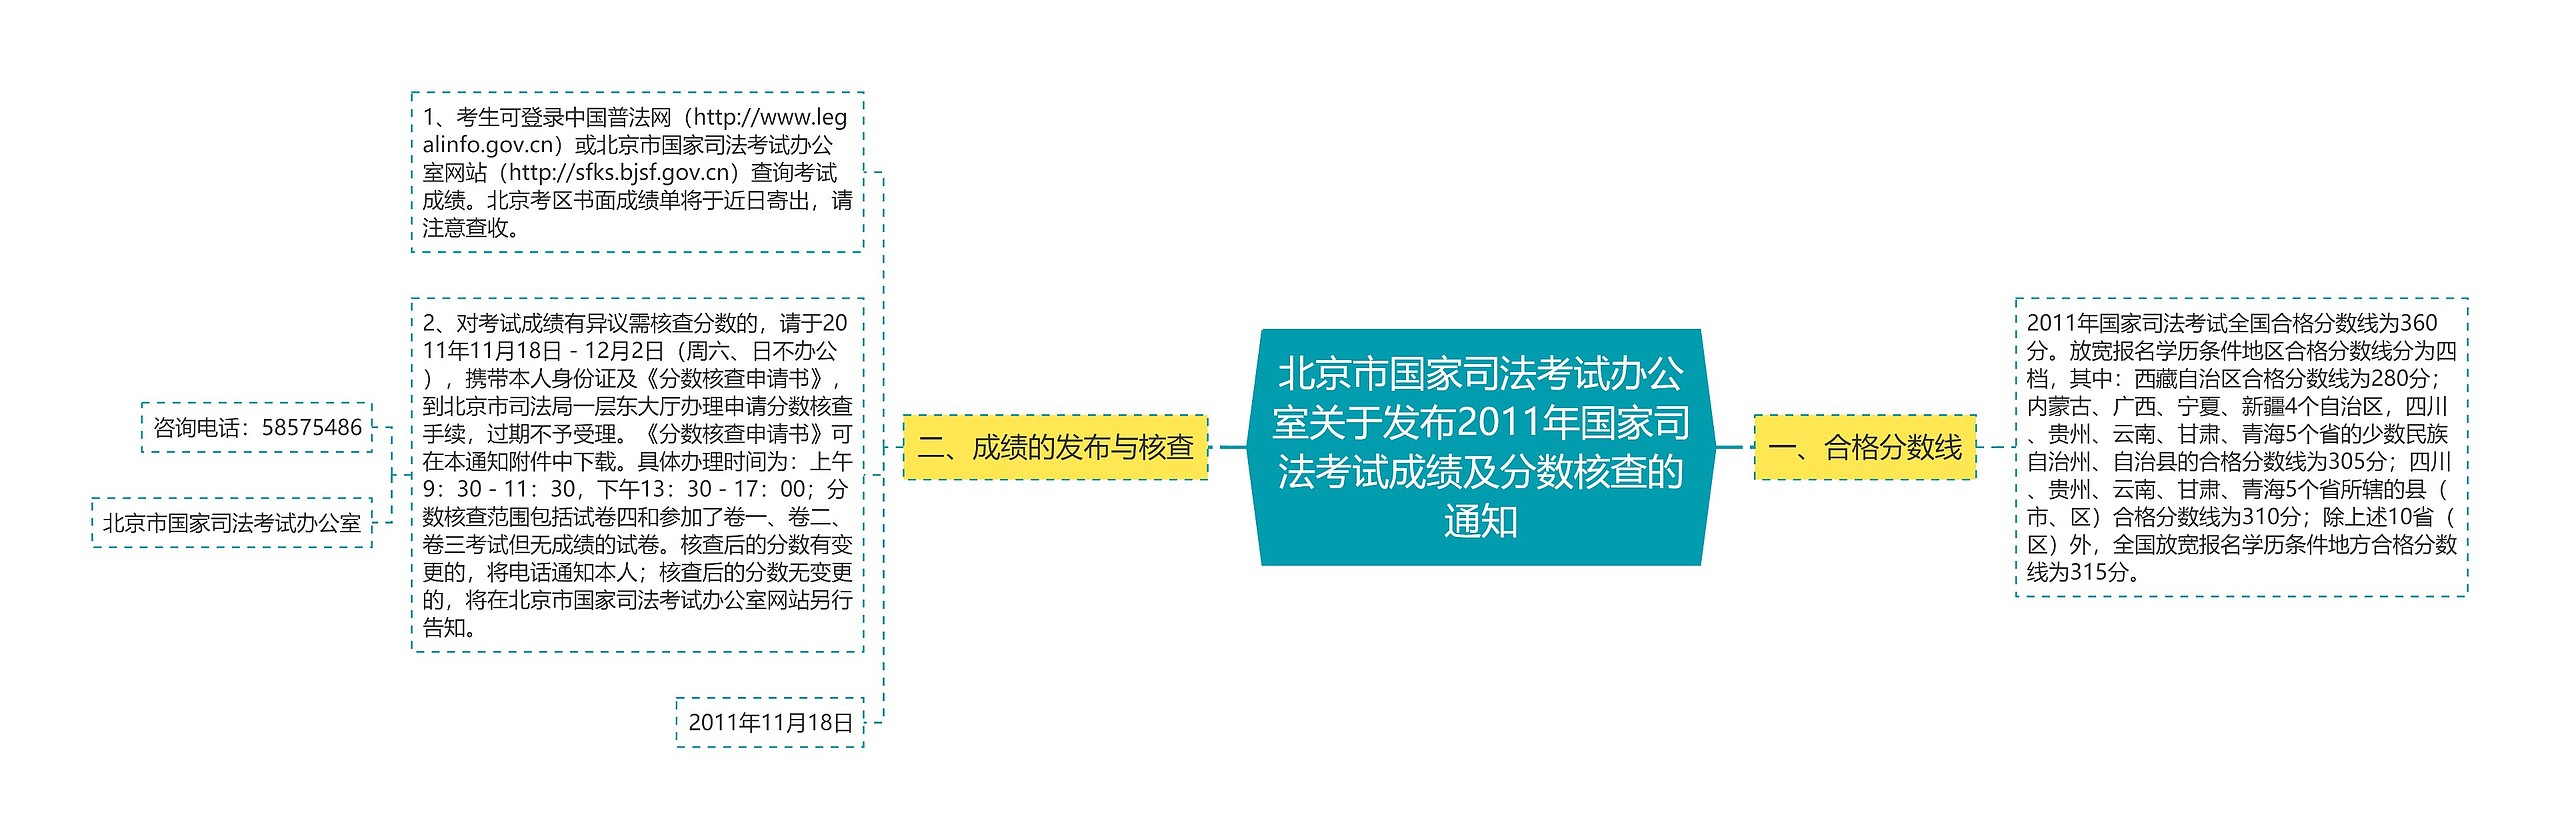 北京市国家司法考试办公室关于发布2011年国家司法考试成绩及分数核查的通知思维导图